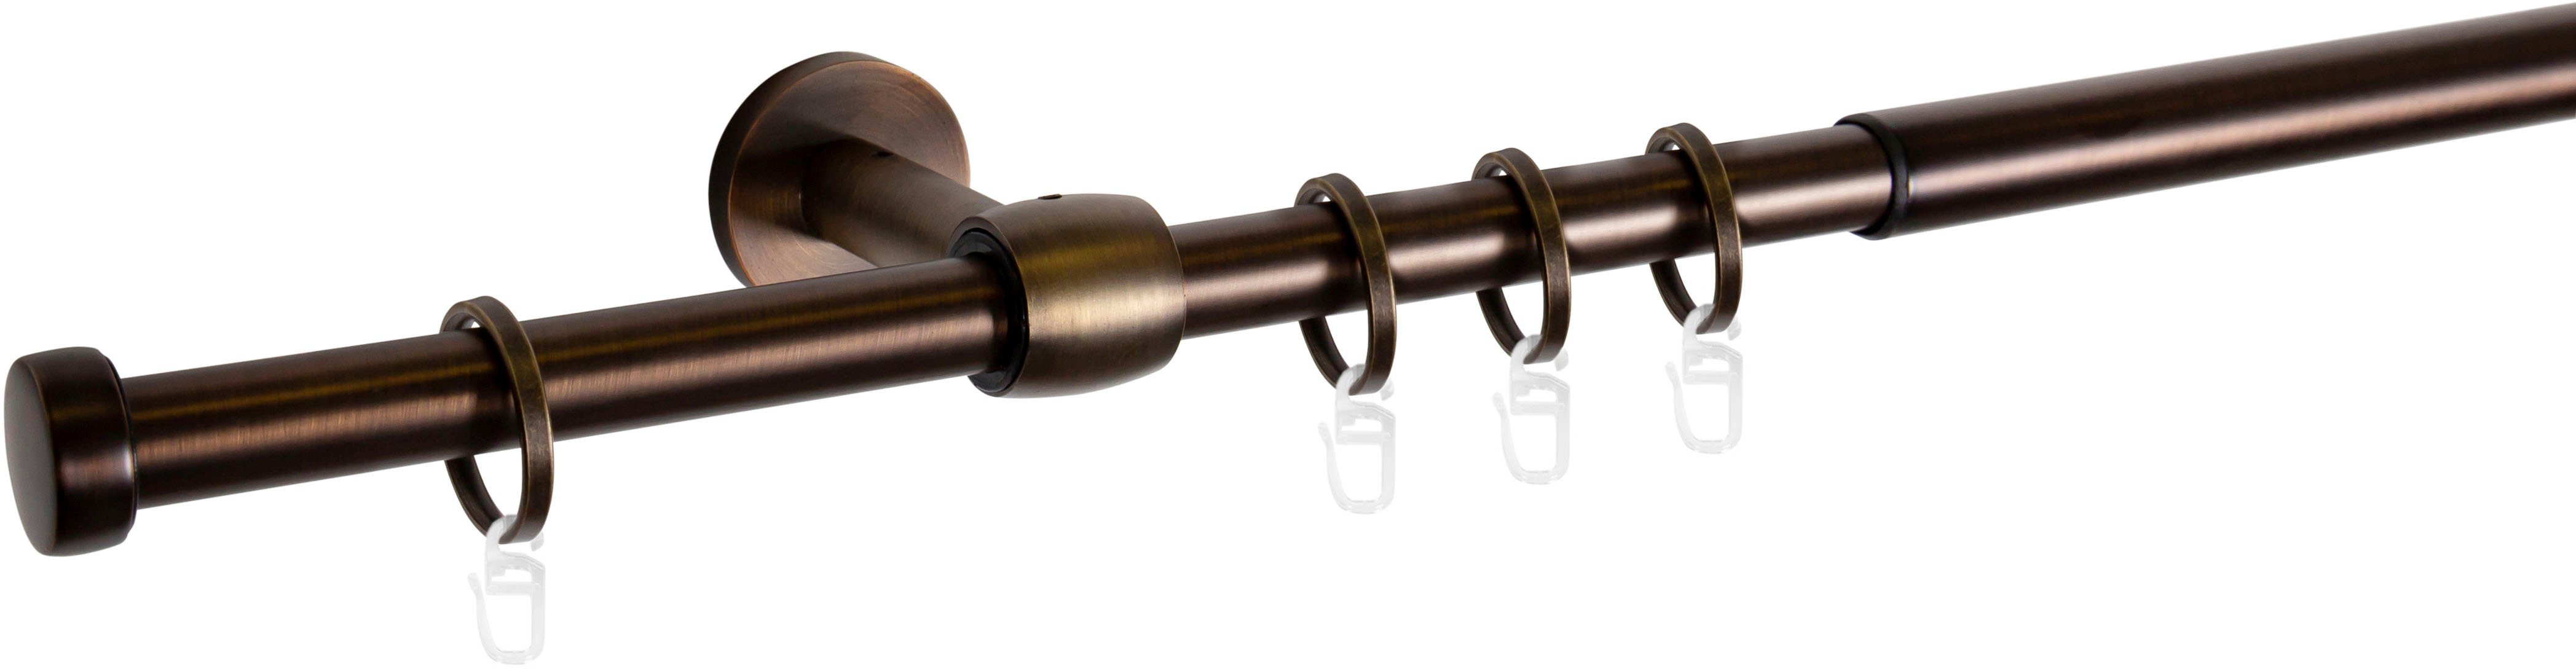 Gardinenstange Cap-Noble, mydeco, Ø 16 mm, 1-läufig, ausziehbar